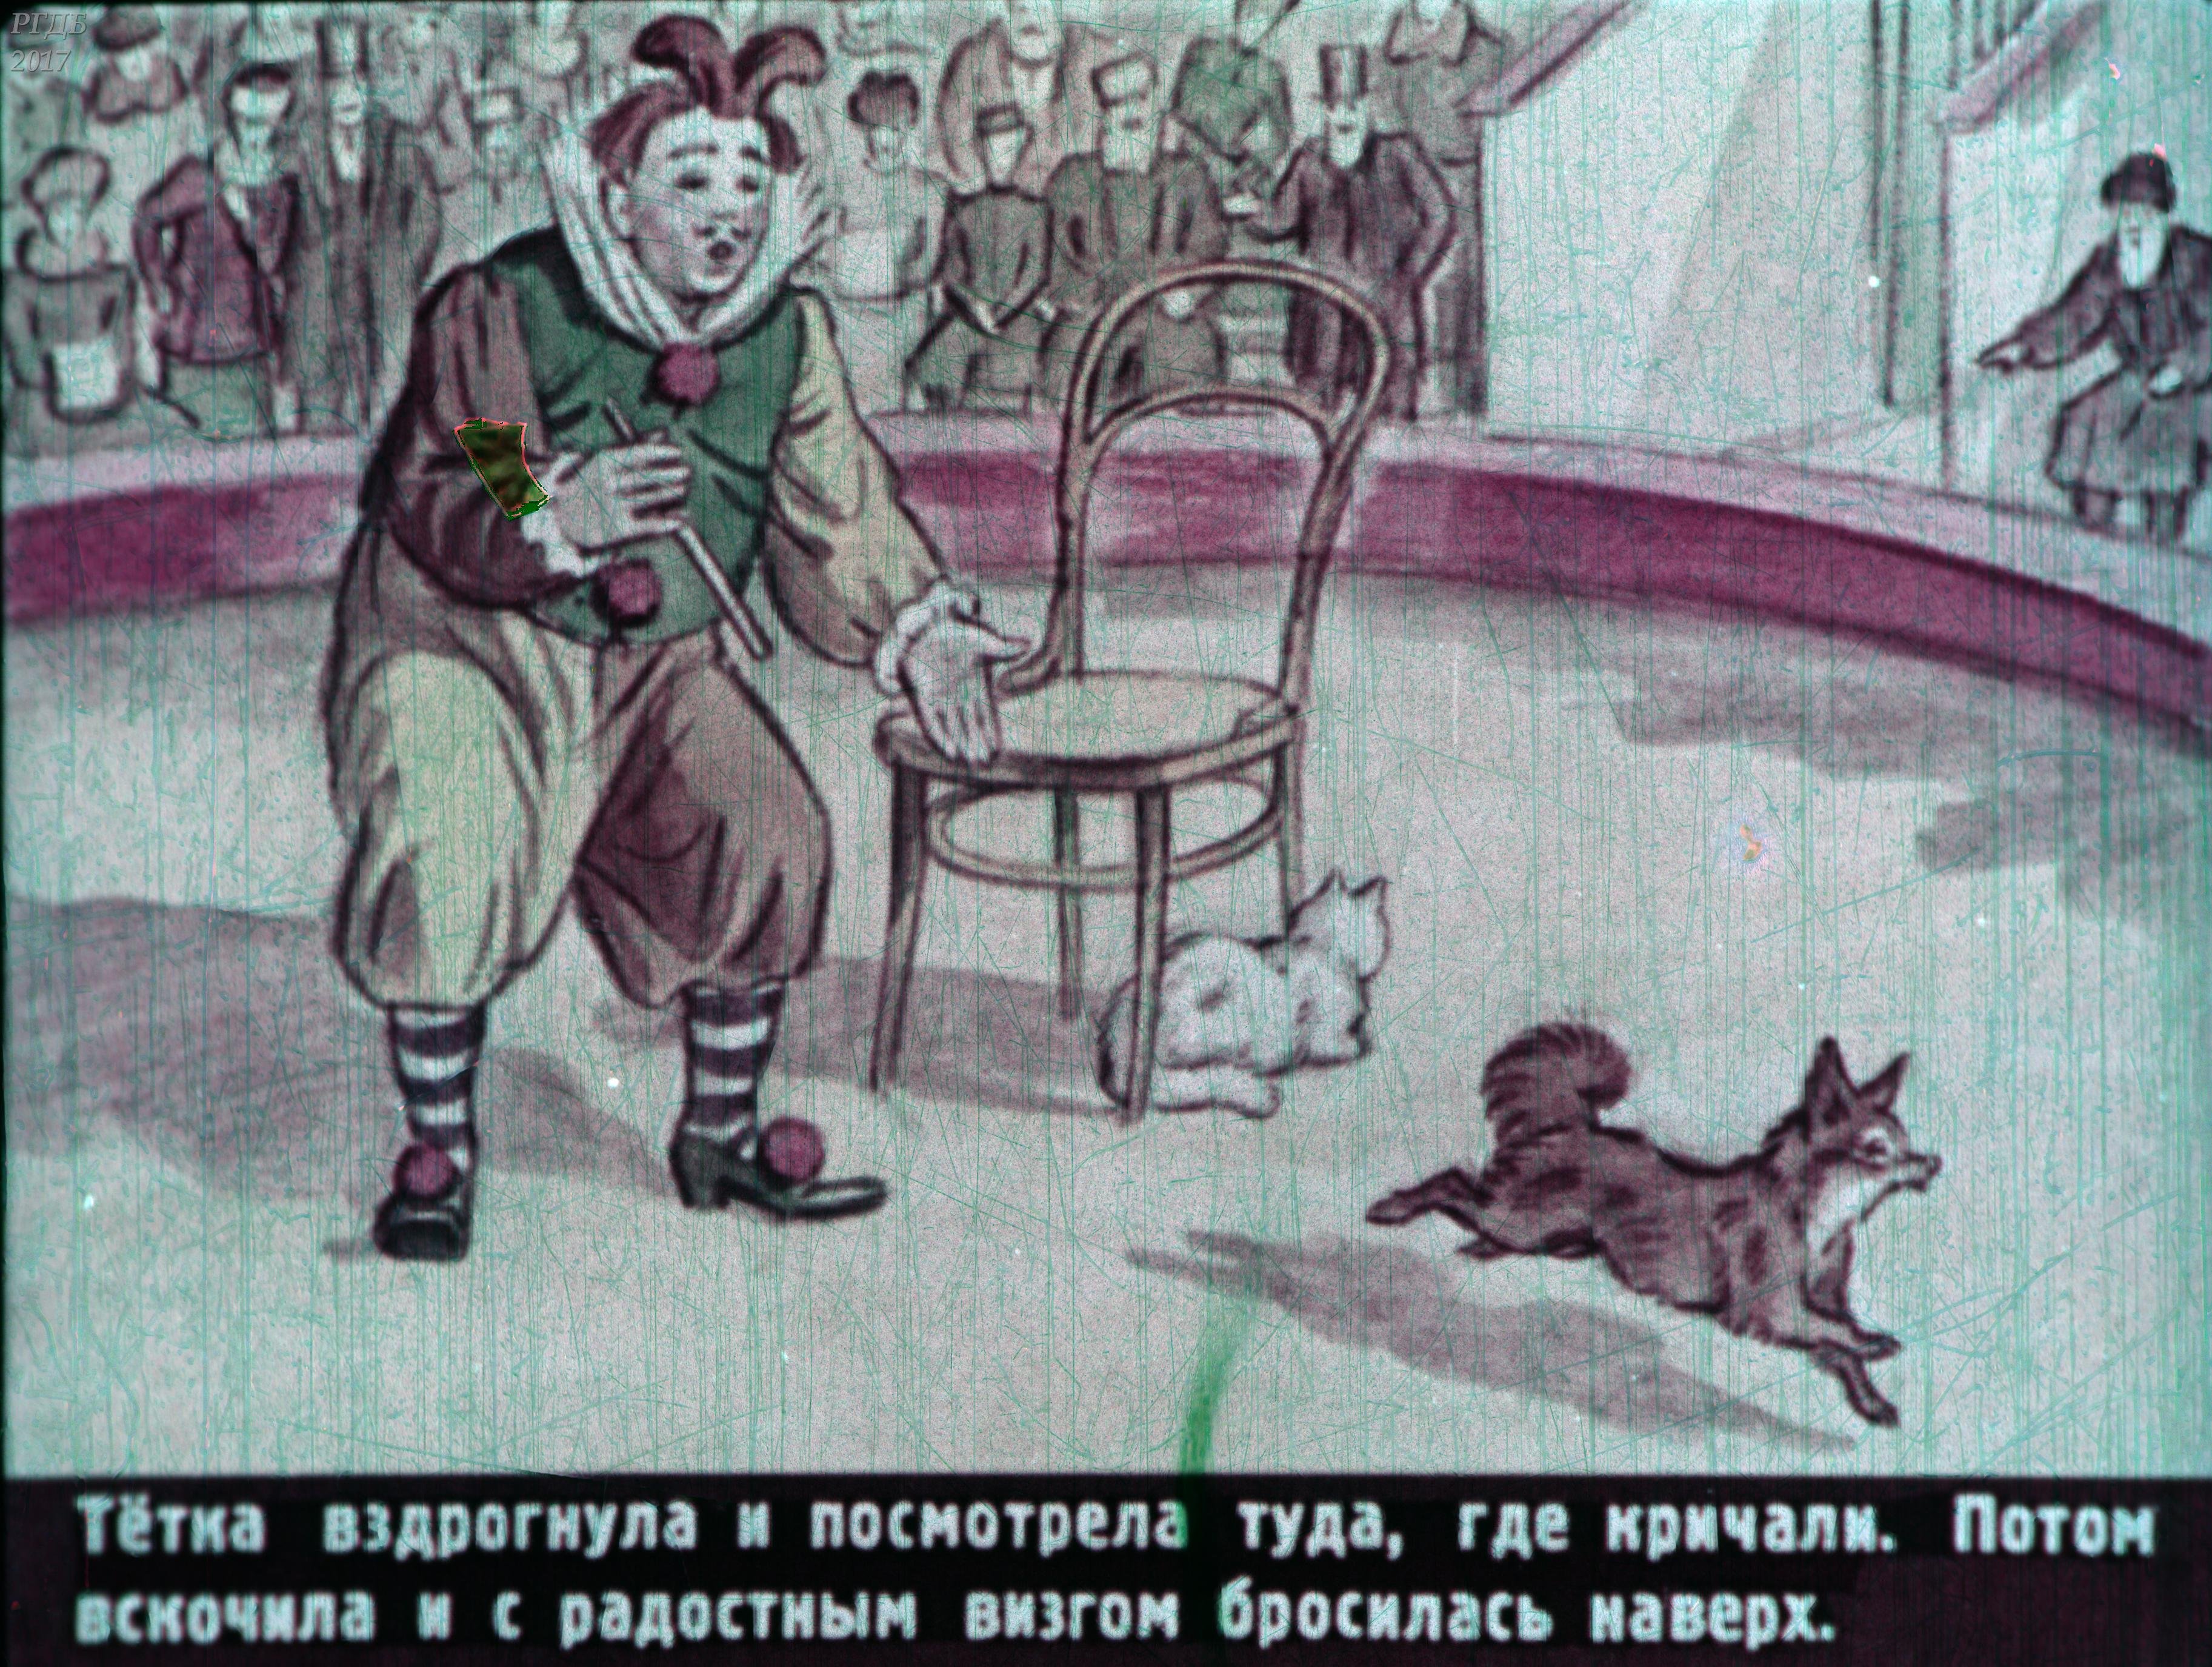 Каштанка бегала взад. Иллюстрация к произведению каштанка Чехов. Каштанка в цирке иллюстрации. Чехов каштанка цирк.